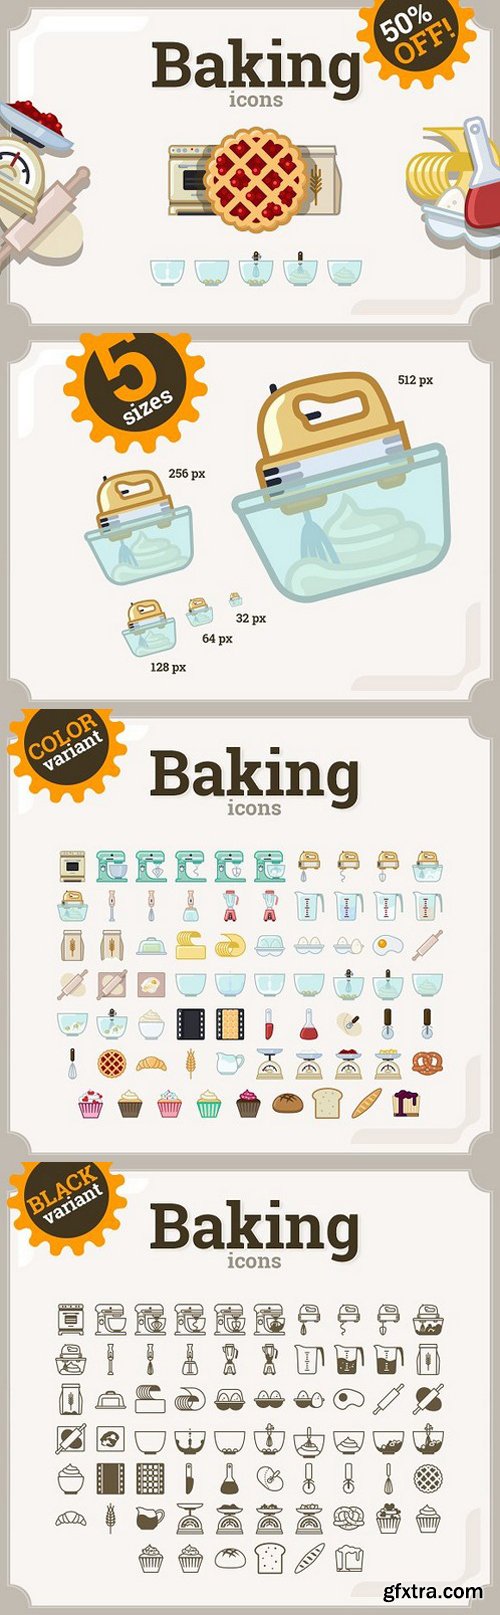 Baking icons set 69 66